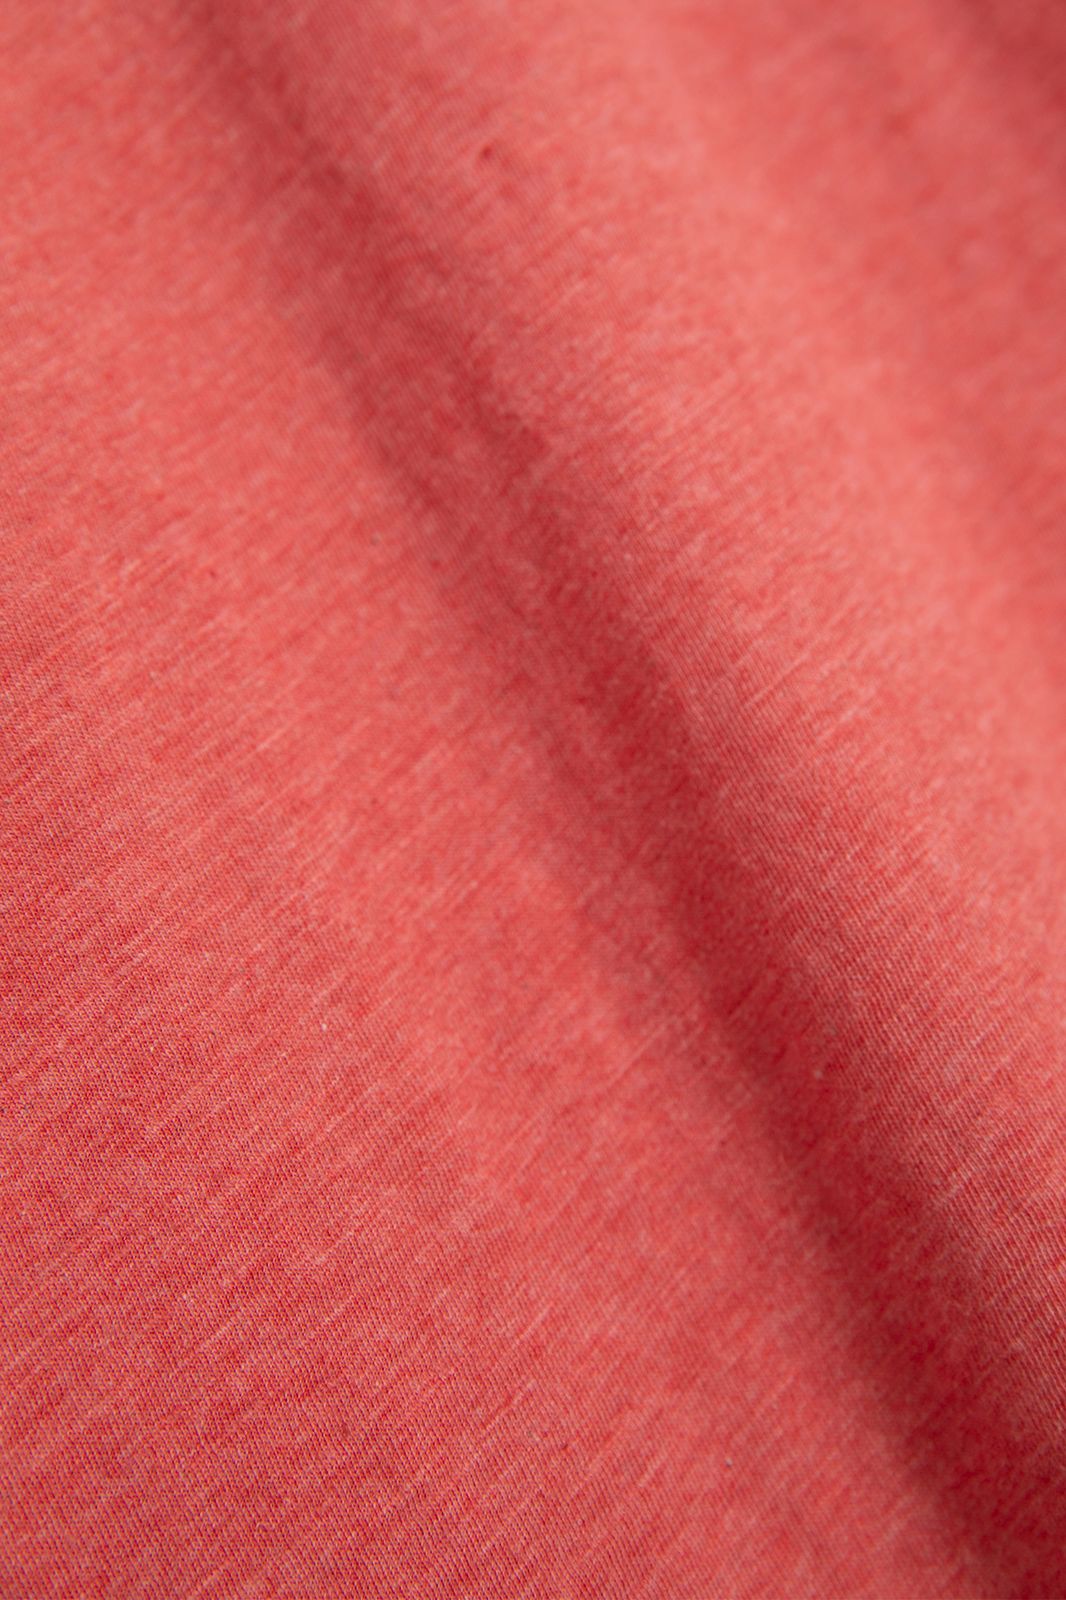 Roze melange katoenen T-shirt - Heren | Sissy-Boy